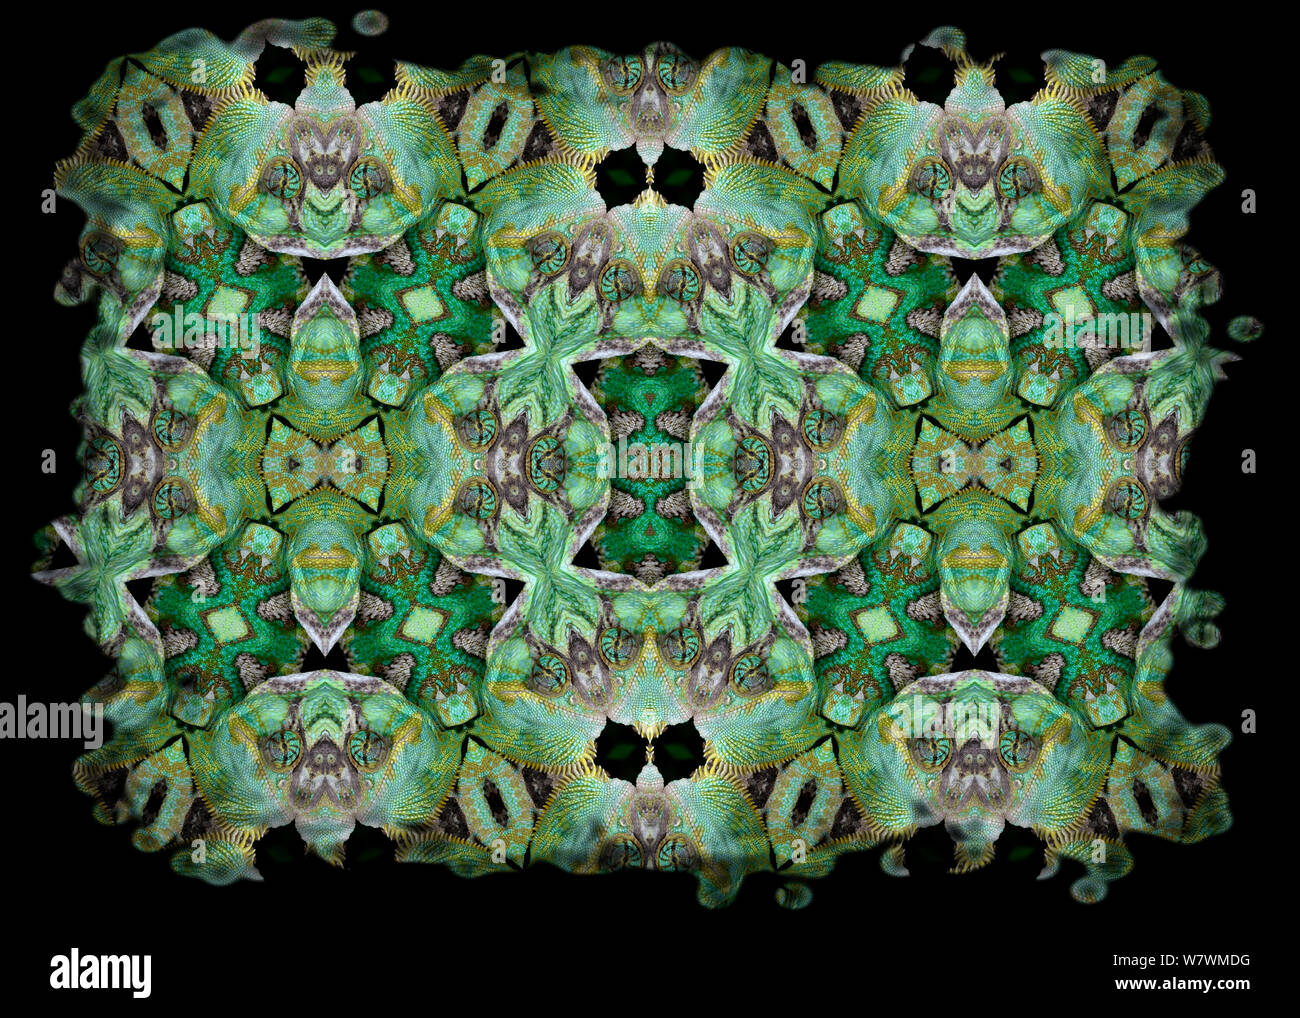 Calidoscopio patrón formado a partir de la imagen de camaleón velado (Chamaeleo calyptratus) escalas y cara. Restringido para uso editorial hasta diciembre de 2015 Foto de stock